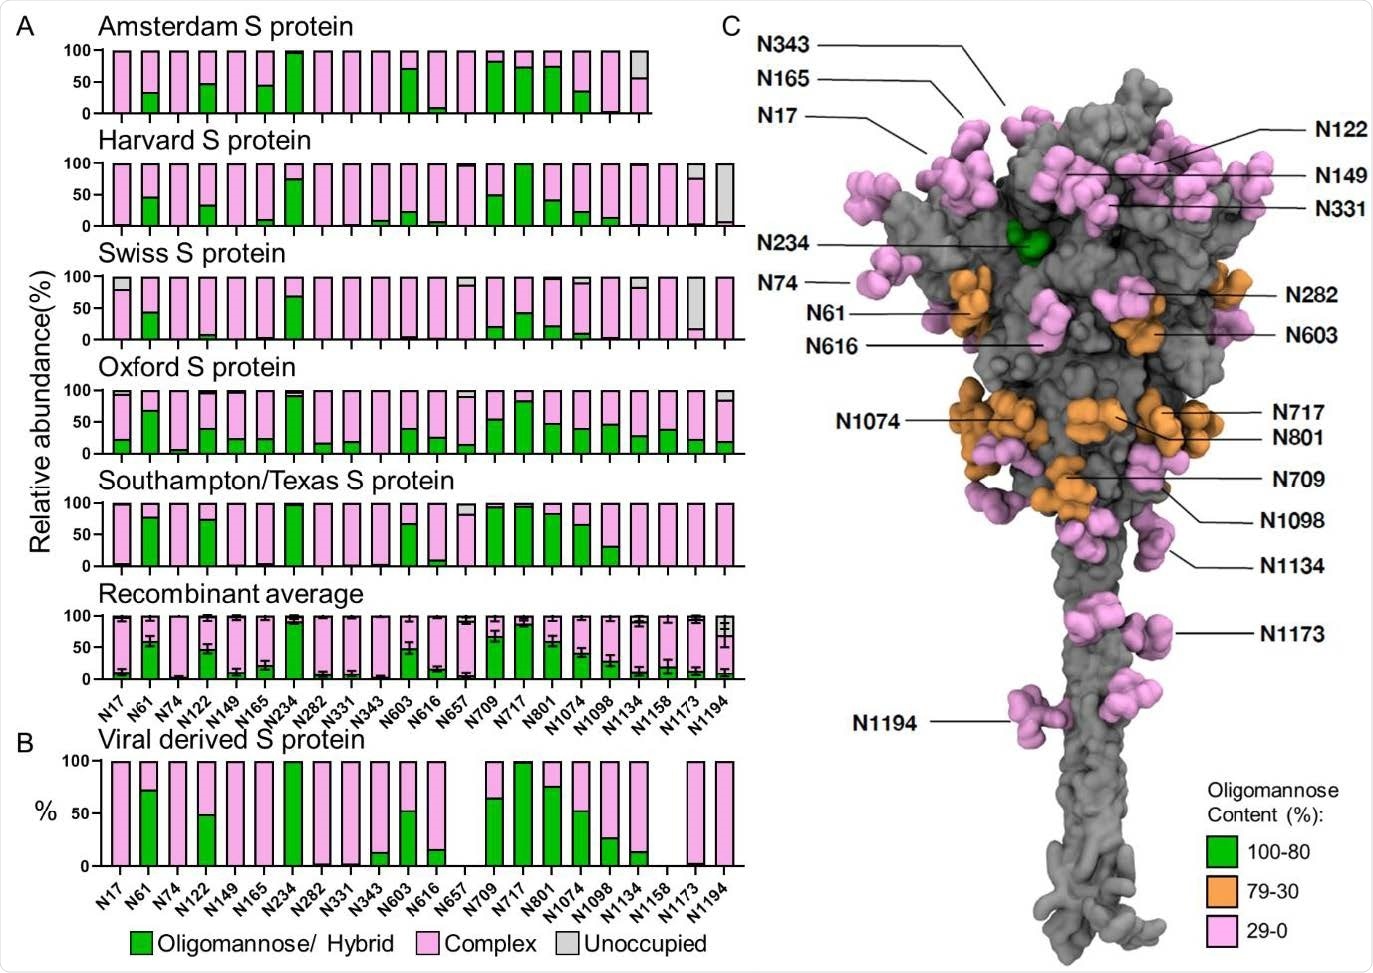 El glycosylation sitio-específico de la proteína derivada recombinante y viral de S de laboratorios múltiples. (a) análisis glycan Sitio-específico de la proteína recombinante de S expresada y purificada en las ubicaciones diferentes. Las cartas de barra representan la proporción relativa de glycoforms presentes en cada sitio, incluyendo la proporción de PNGS que no fueron modificados por un glycan N-conectada. La proporción de oligomannose- y el híbrido-tipo glycans se colorean verde. El complejo-tipo tramitado glycans se colorea rosado y la proporción de sitios vacantes se colorea gris. La institución que ofreció la proteína de S para el análisis es mencionada encima de cada carta. Los datos de Tejas/de Southampton se reproducen de Chawla y otros (los datos inéditos). Las composiciones medias de la proteína recombinante de S eran calculadas usando todas las muestras. Las barras representan el desvío medio +/- estándar del medio de todas las muestras recombinantes analizadas. (b) El análisis sitio-específico derivado viral fue obtenido de los datos detectados por Yao y otros y categorizados de la misma manera que above33. Los datos para los sitios N657 y N1158 no se podían obtener y no se representan. (c) Modelo integral que visualiza el glycosylation sitio-específico del oligomannose de la proteína derivada viral de S; la descripción de cómo este modelo fue generado se puede encontrar en materiales y métodos. La proteína y los glycans se muestran en la representación superficial; el anterior coloreado en gris y estes último coloreó basado en el contenido del oligomannose (verde para 80-100%, anaranjados para 30-80% y el festonear para 0-30%).